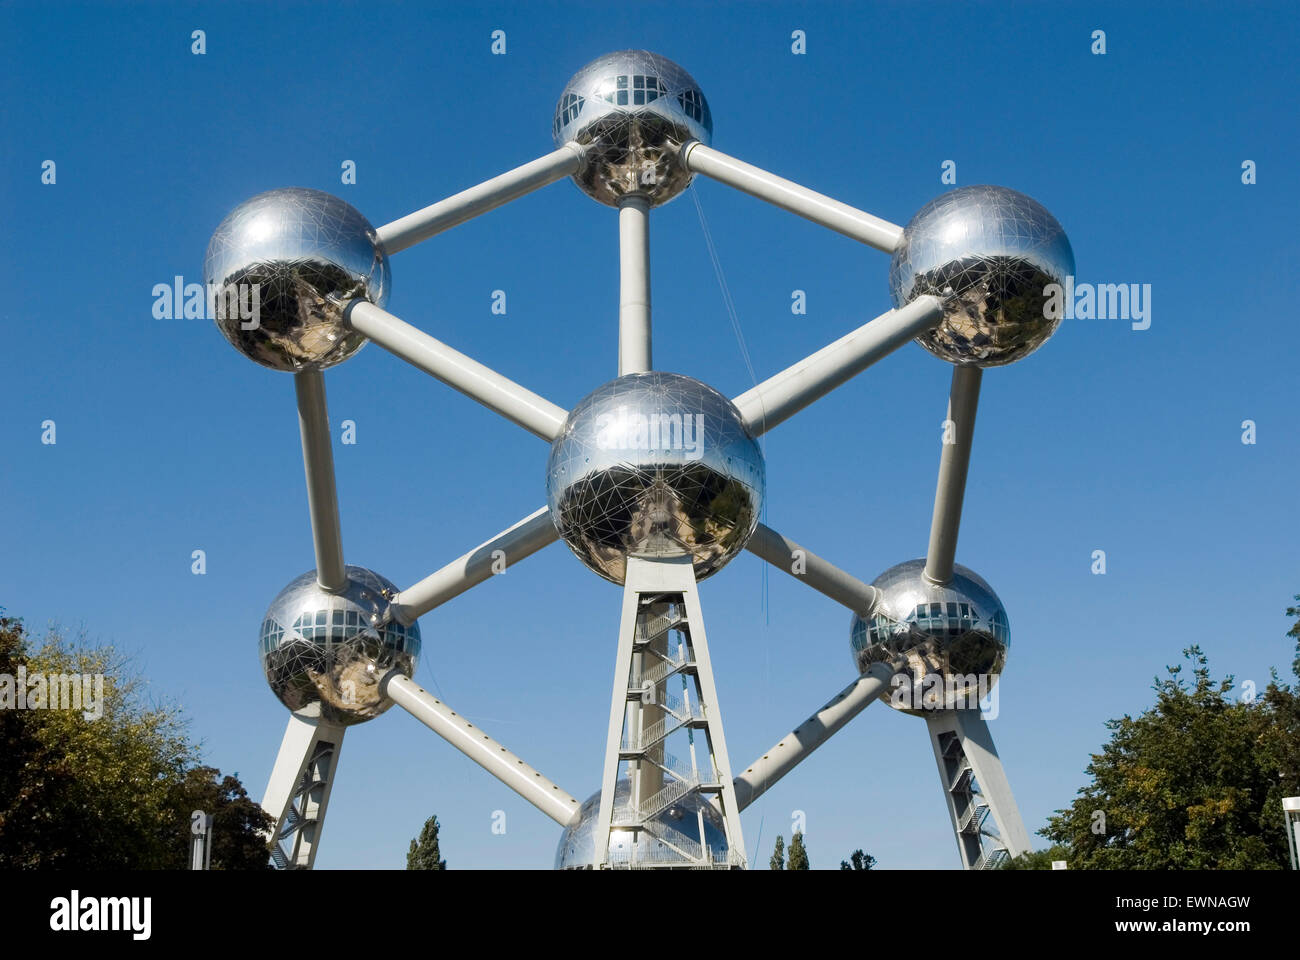 Atomium, monument d'un fer à repasser Worldfamous noyau atomique, en 2018, 60e anniversaire, Bruxelles Belgique Europe Banque D'Images